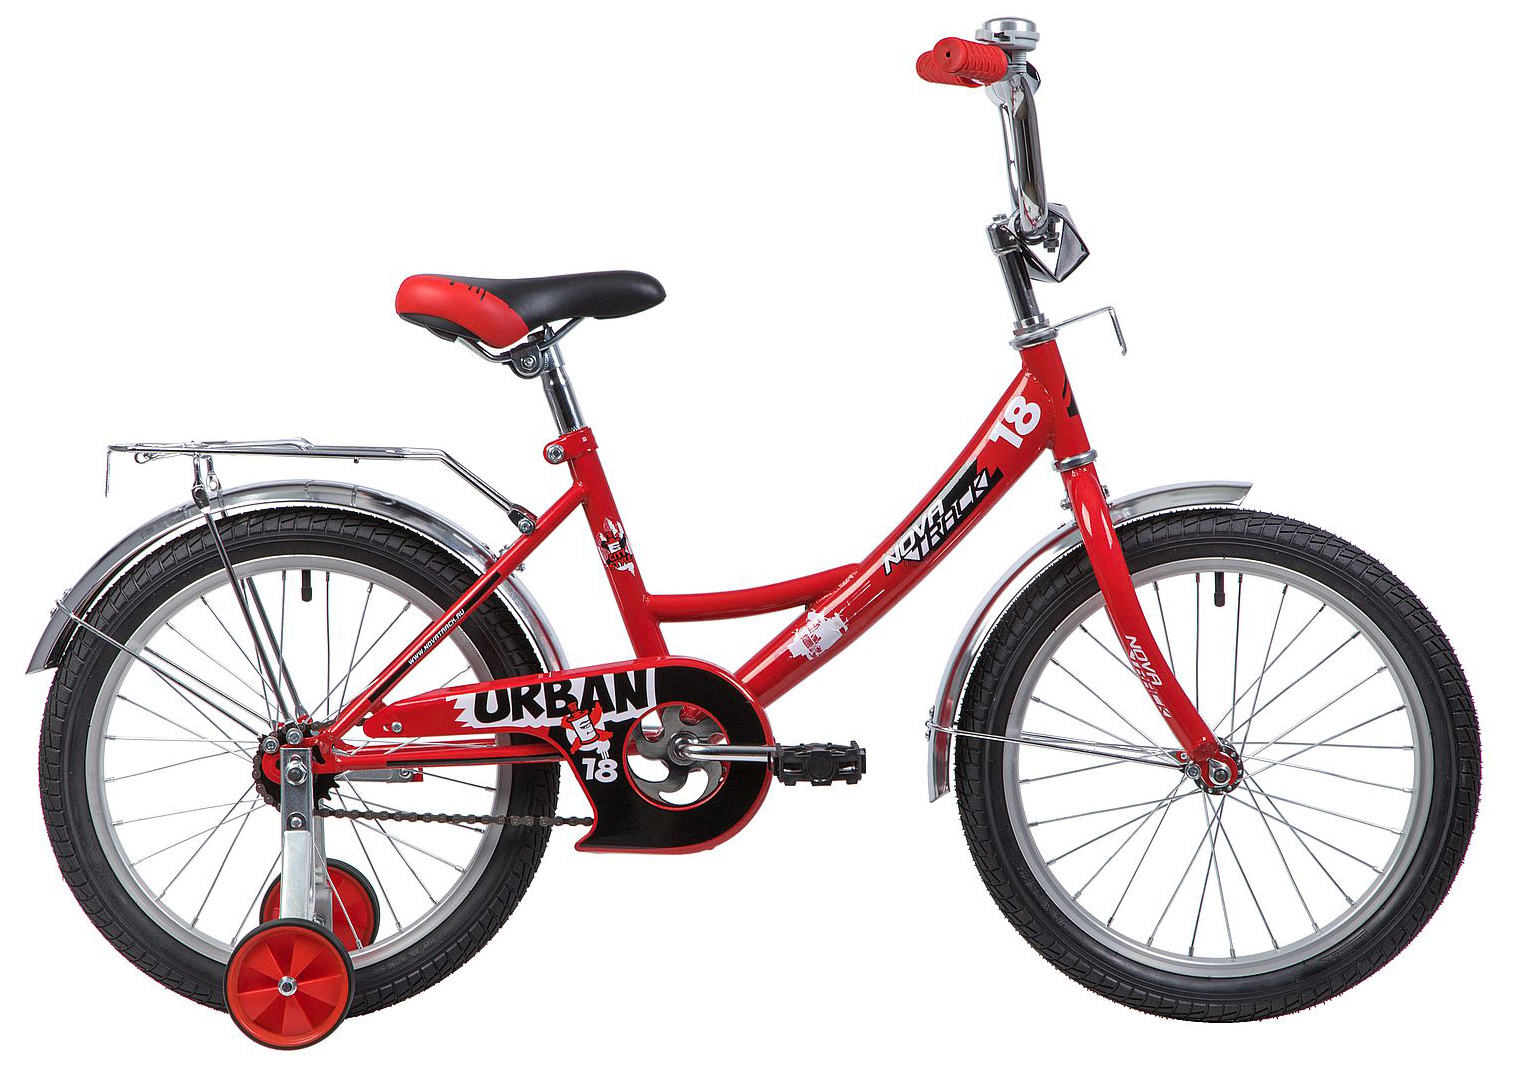  Отзывы о Детском велосипеде Novatrack Urban 18 2019